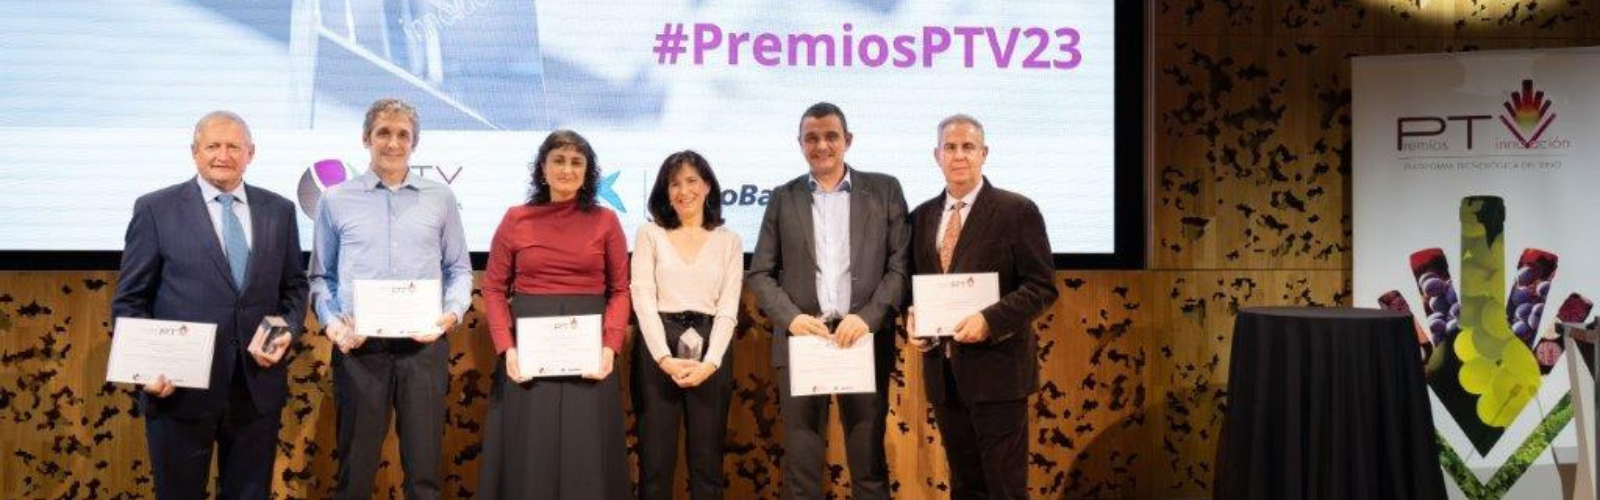 Las investigadoras Encarna Gómez Plaza y Ana Belén Bautista Ortín recogen un premio de innovación por un proyecto que mejora la calidad y conservación del vino